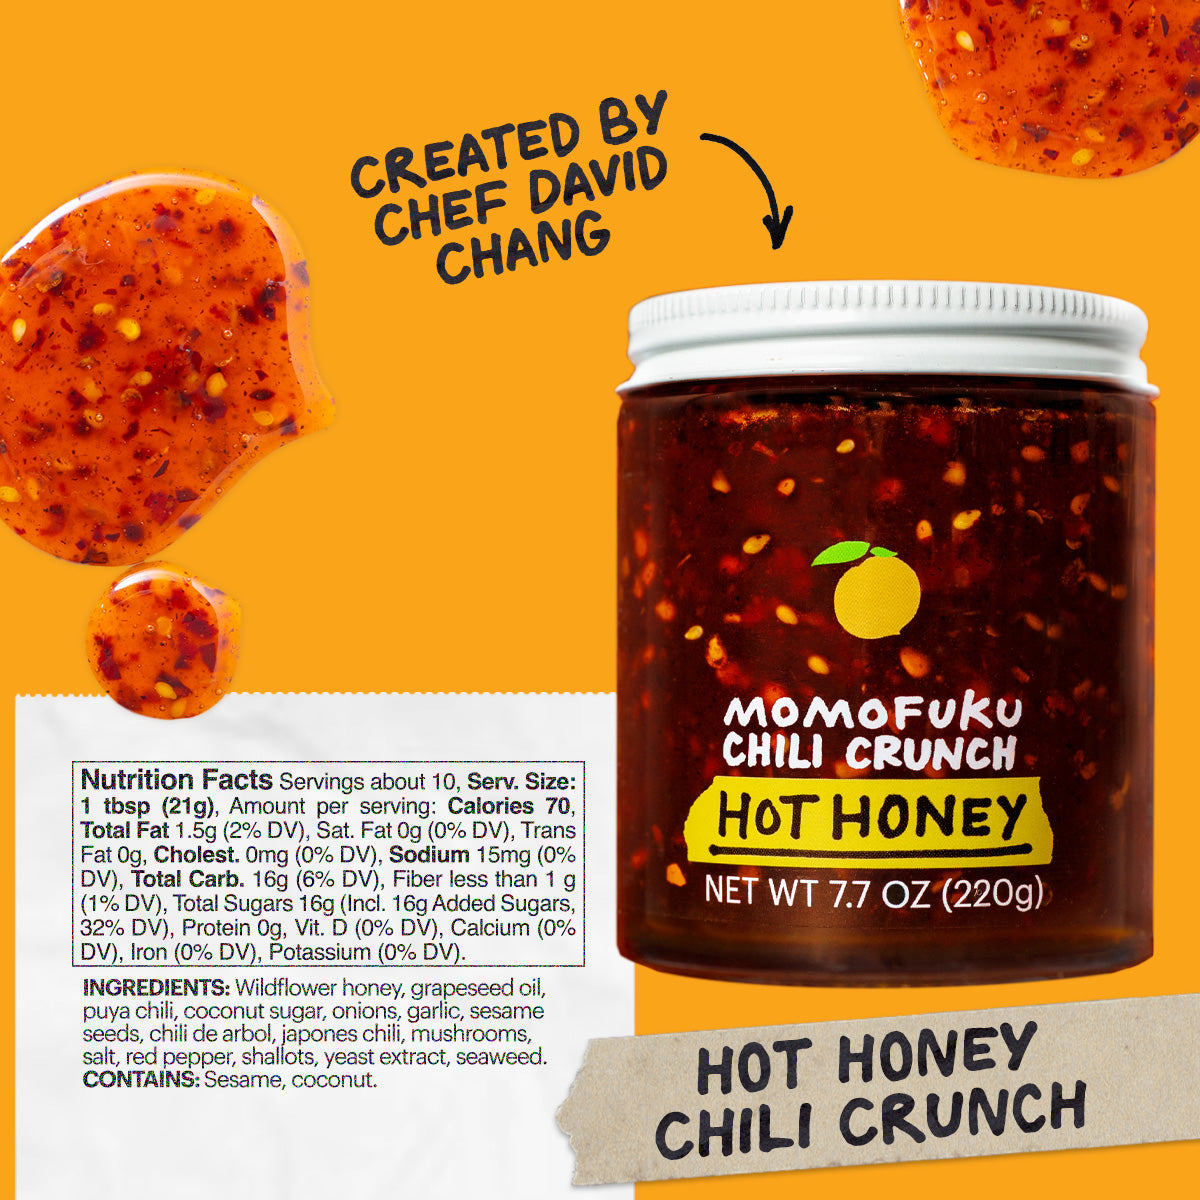 Chili Crunch Hot Honey